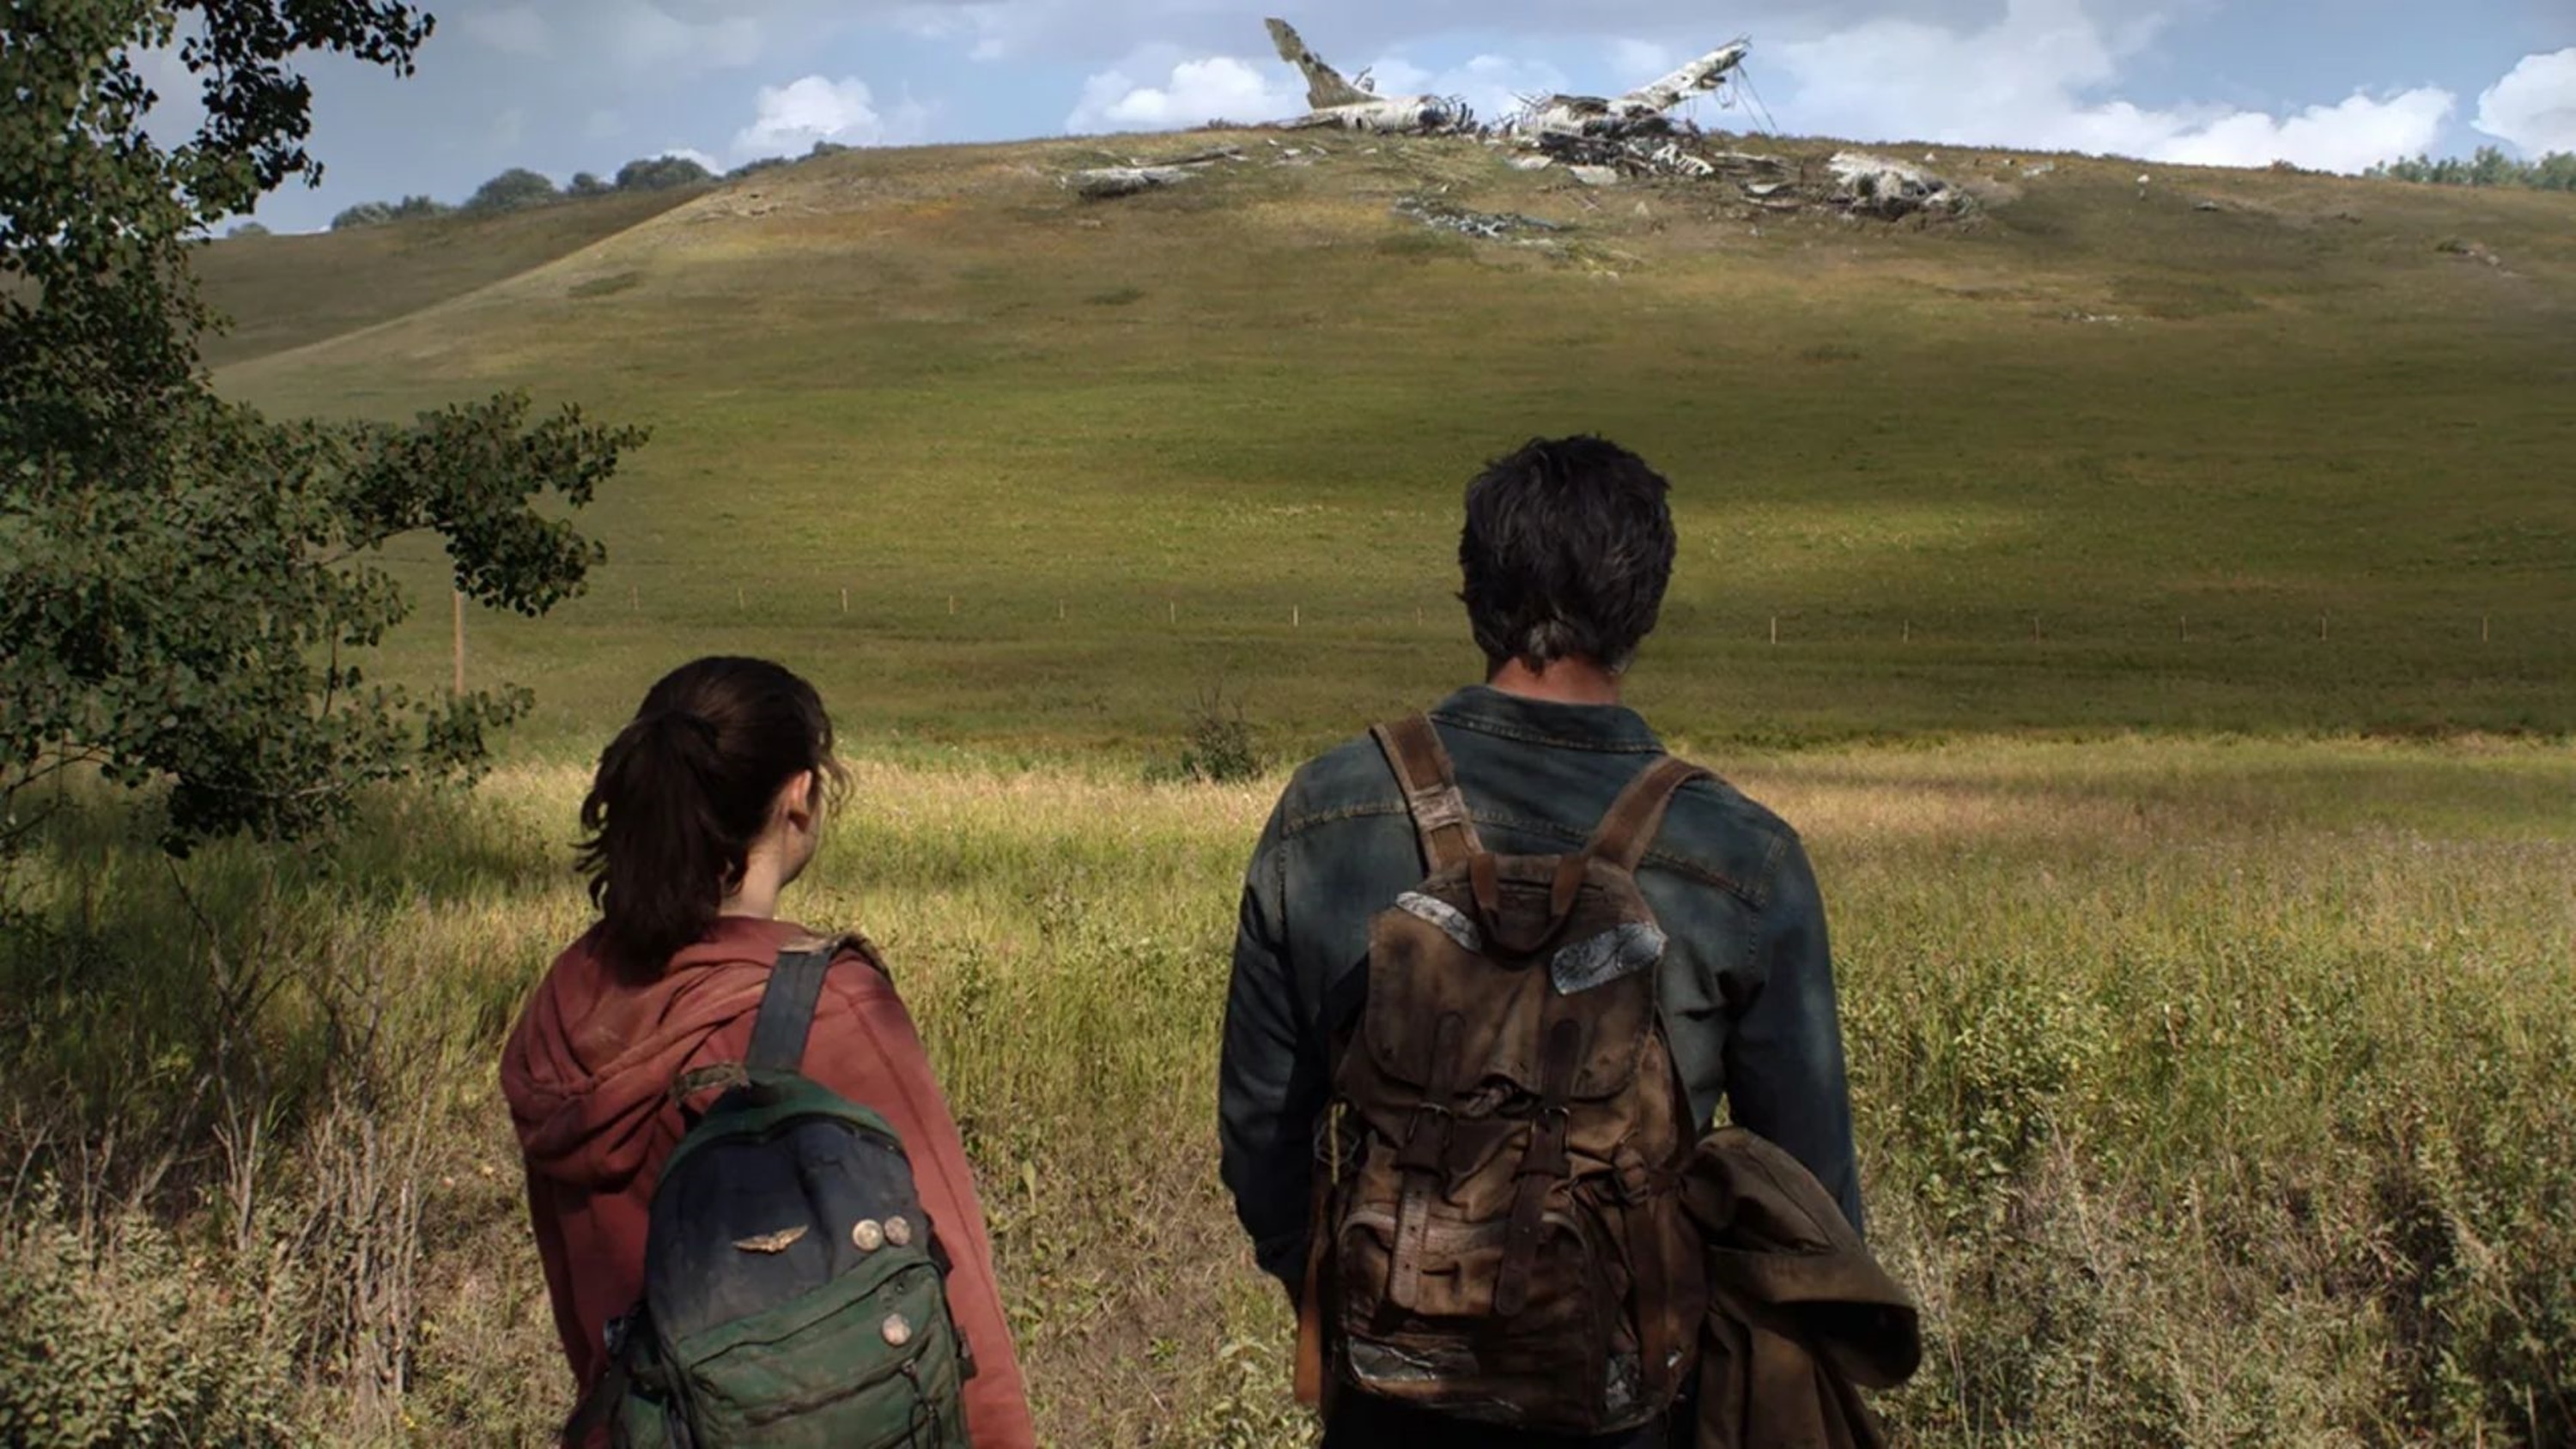 Постер для записи в блоге - The Last of Us - от игры до сериала